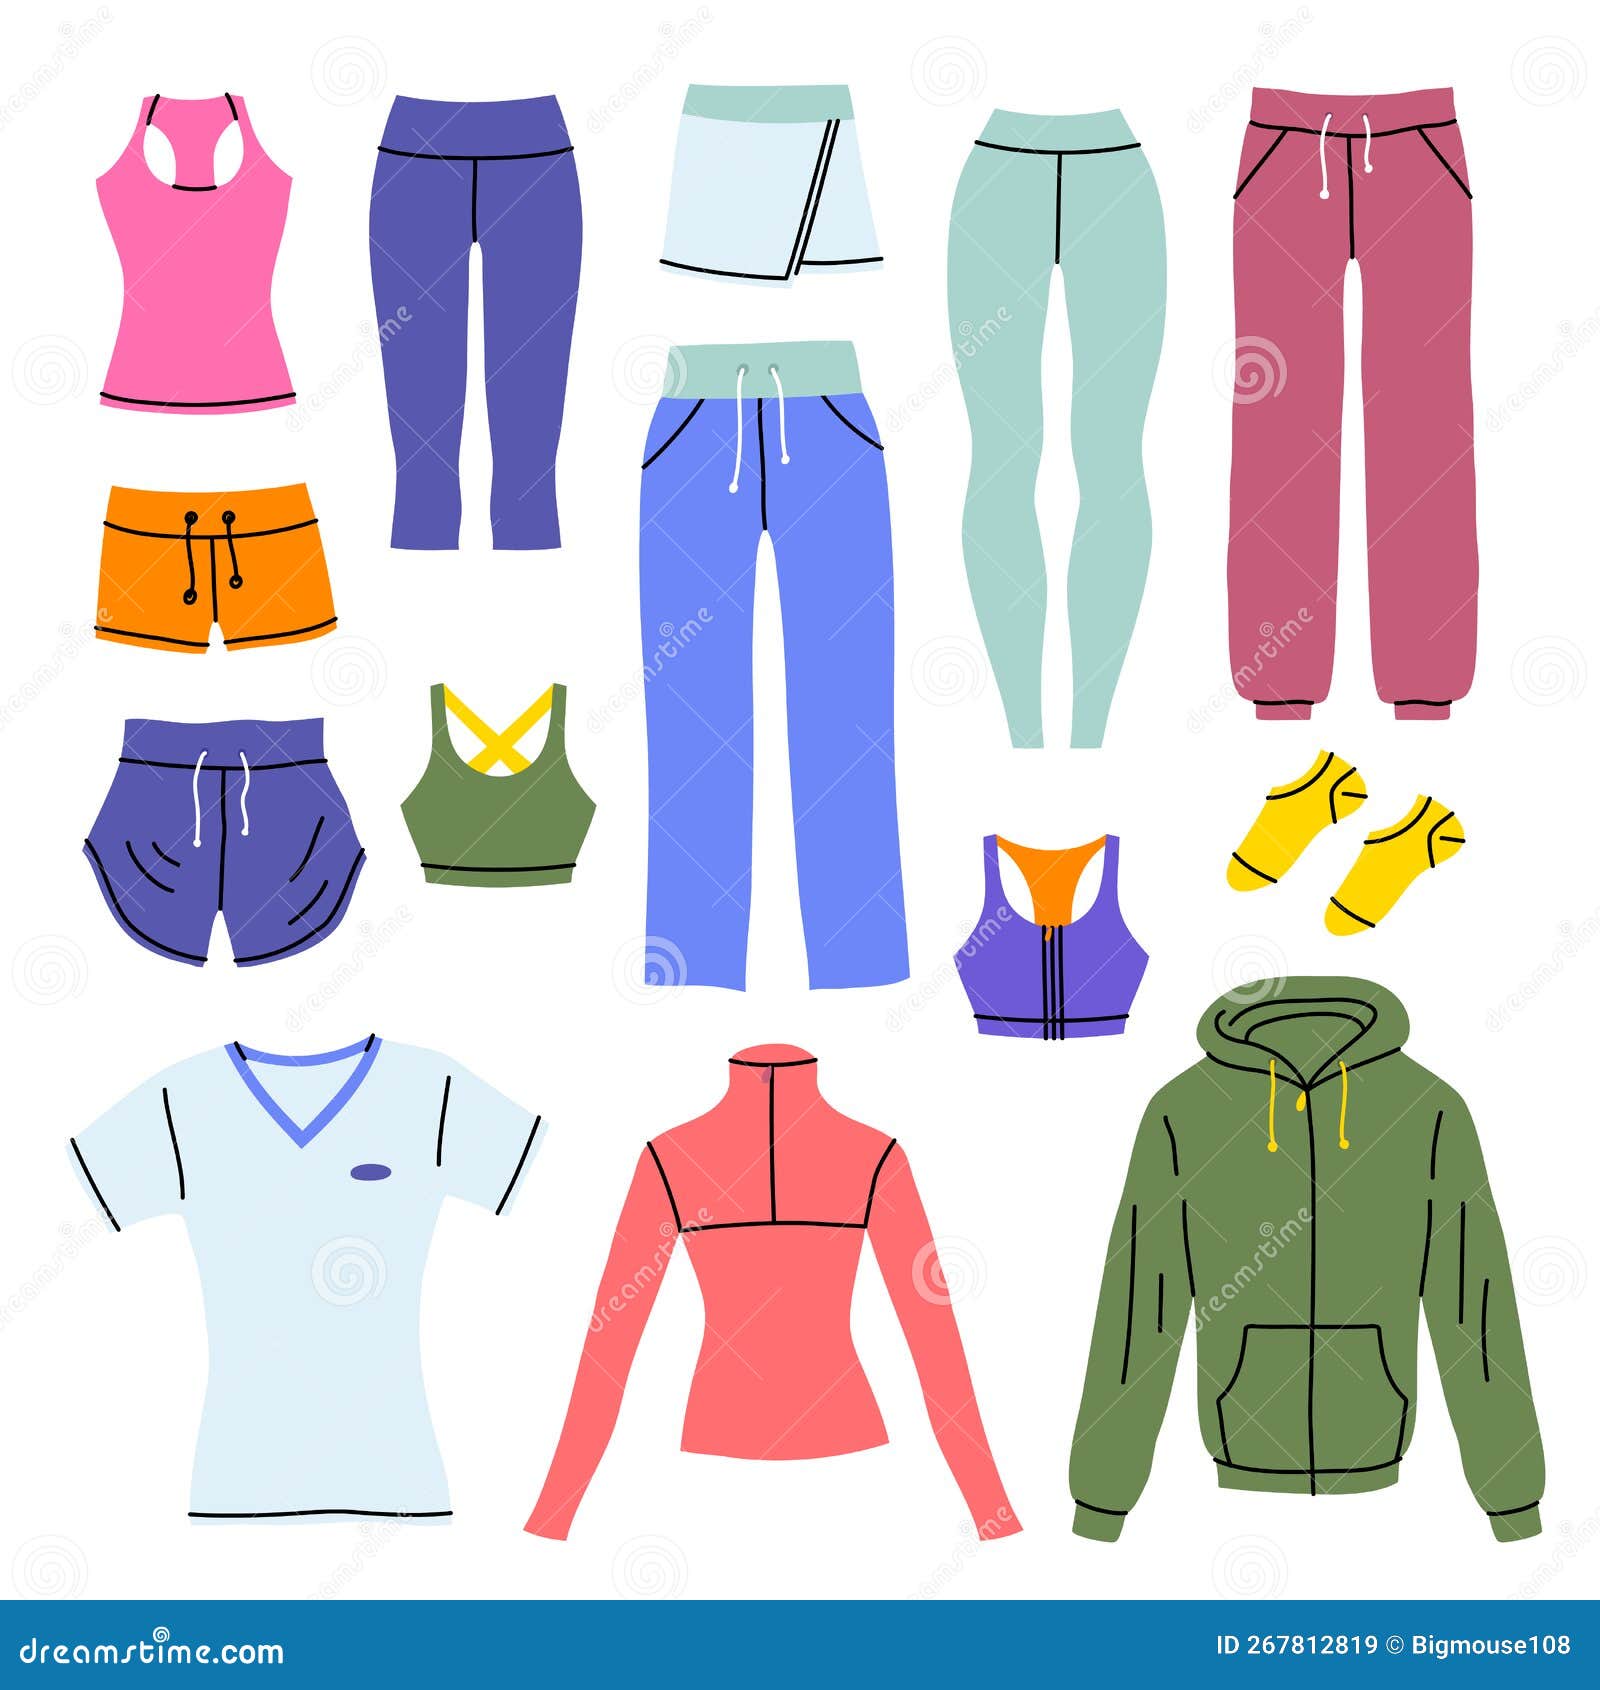 https://thumbs.dreamstime.com/z/desenho-animado-cor-vestimenta-roupa-diferente-vetor-de-diferentes-roupas-pr%C3%B3prias-para-treino-desportivo-e-estilo-design-plano-267812819.jpg